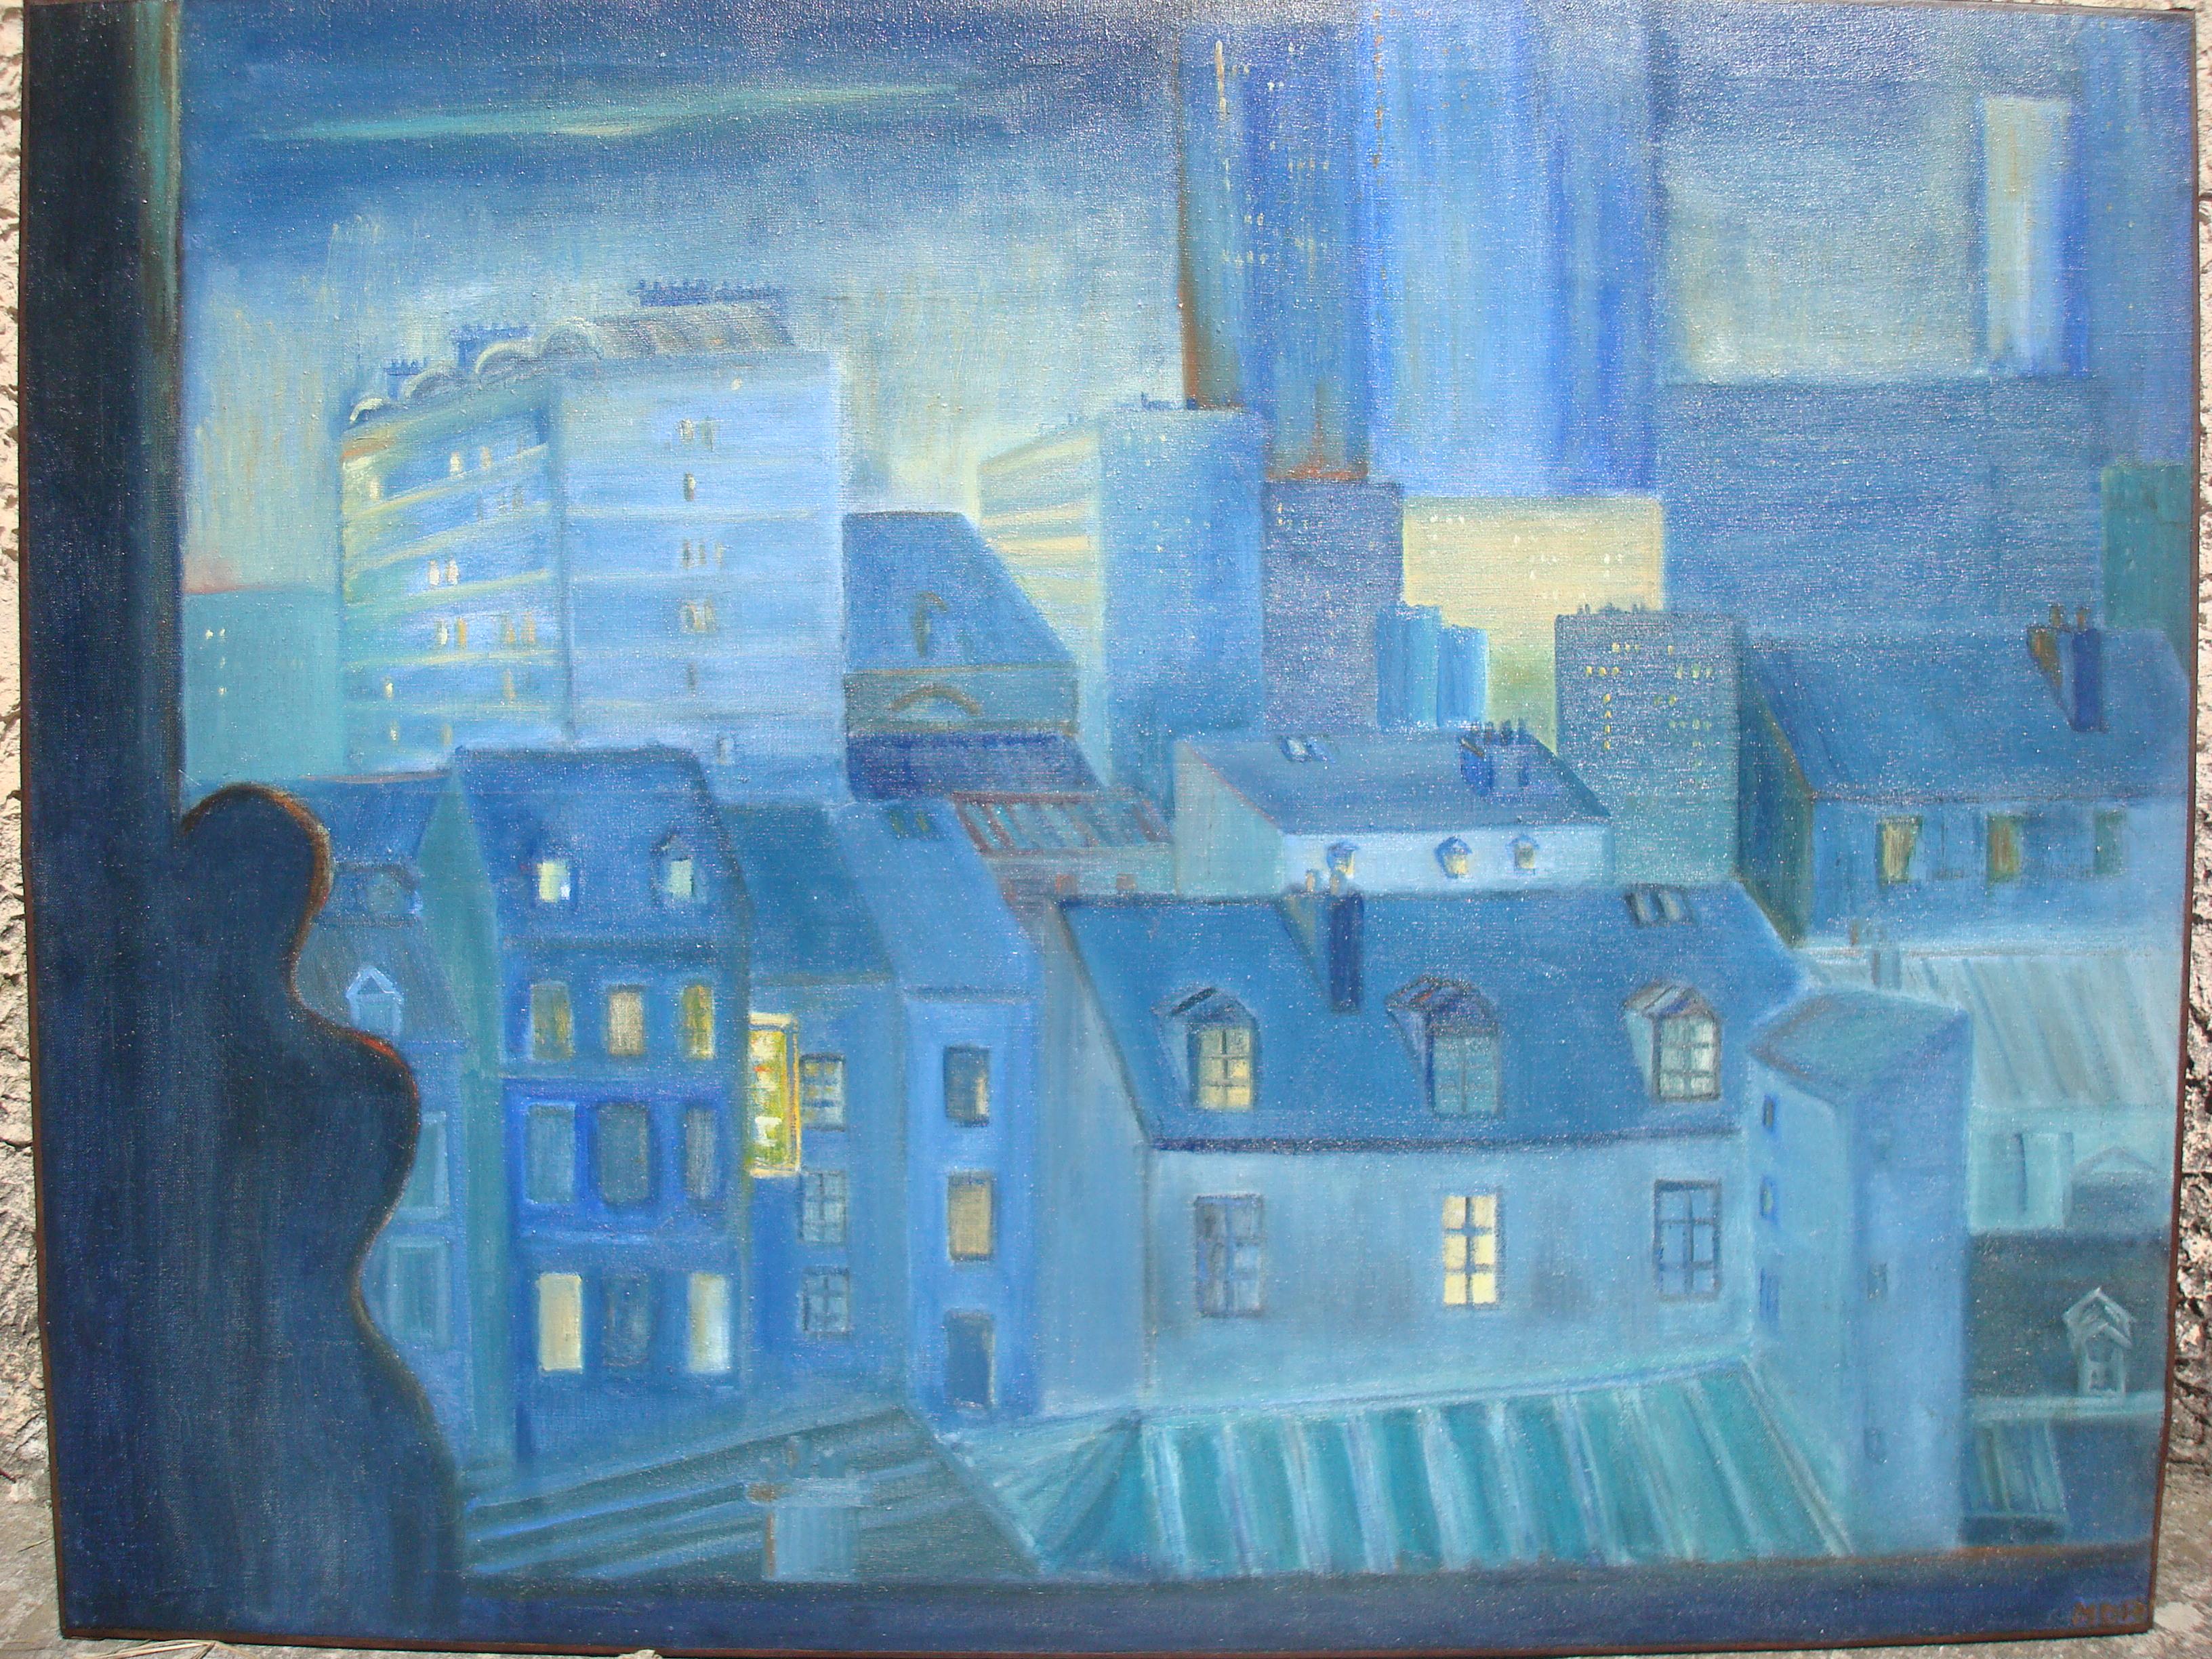 Peinture originale à l'huile sur toile représentant les toits de Paris, France, certainement une chambre avec une vue magnifique. 
Superbes couleurs bleues contemporaines. 
Signé à la main en bas à droite, artiste non identifié.

Grand original